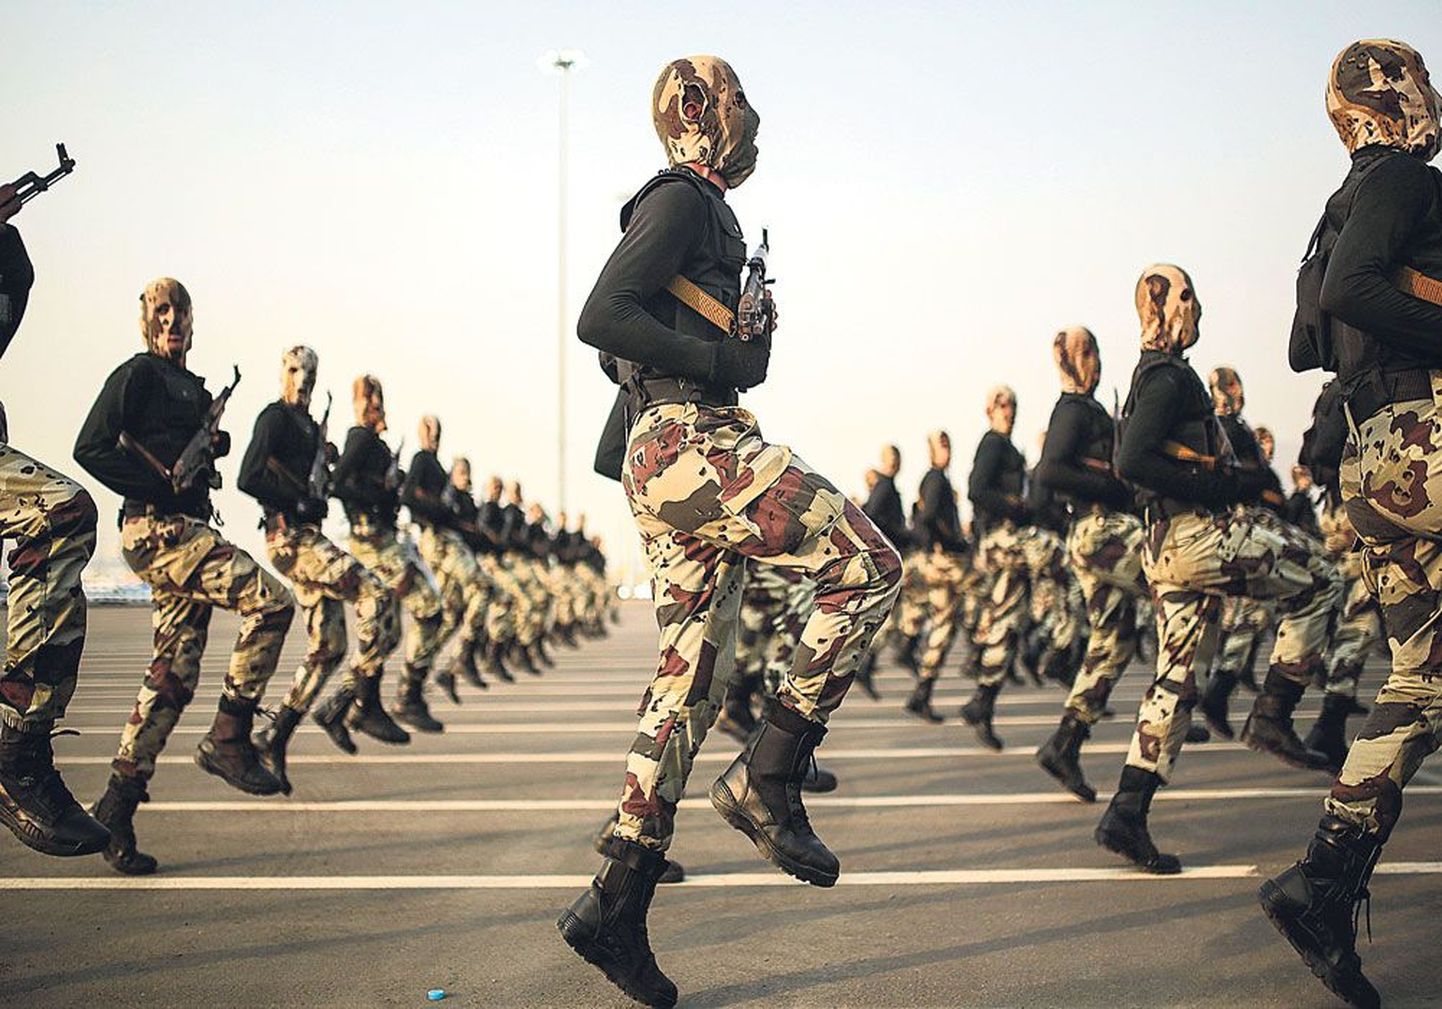 Саудиты заявили о готовности ввести войска в Сирию, чтобы бороться 
с исламистами. 
На фото силы безопасности Саудовской Аравии на военном параде осенью прошлого года.